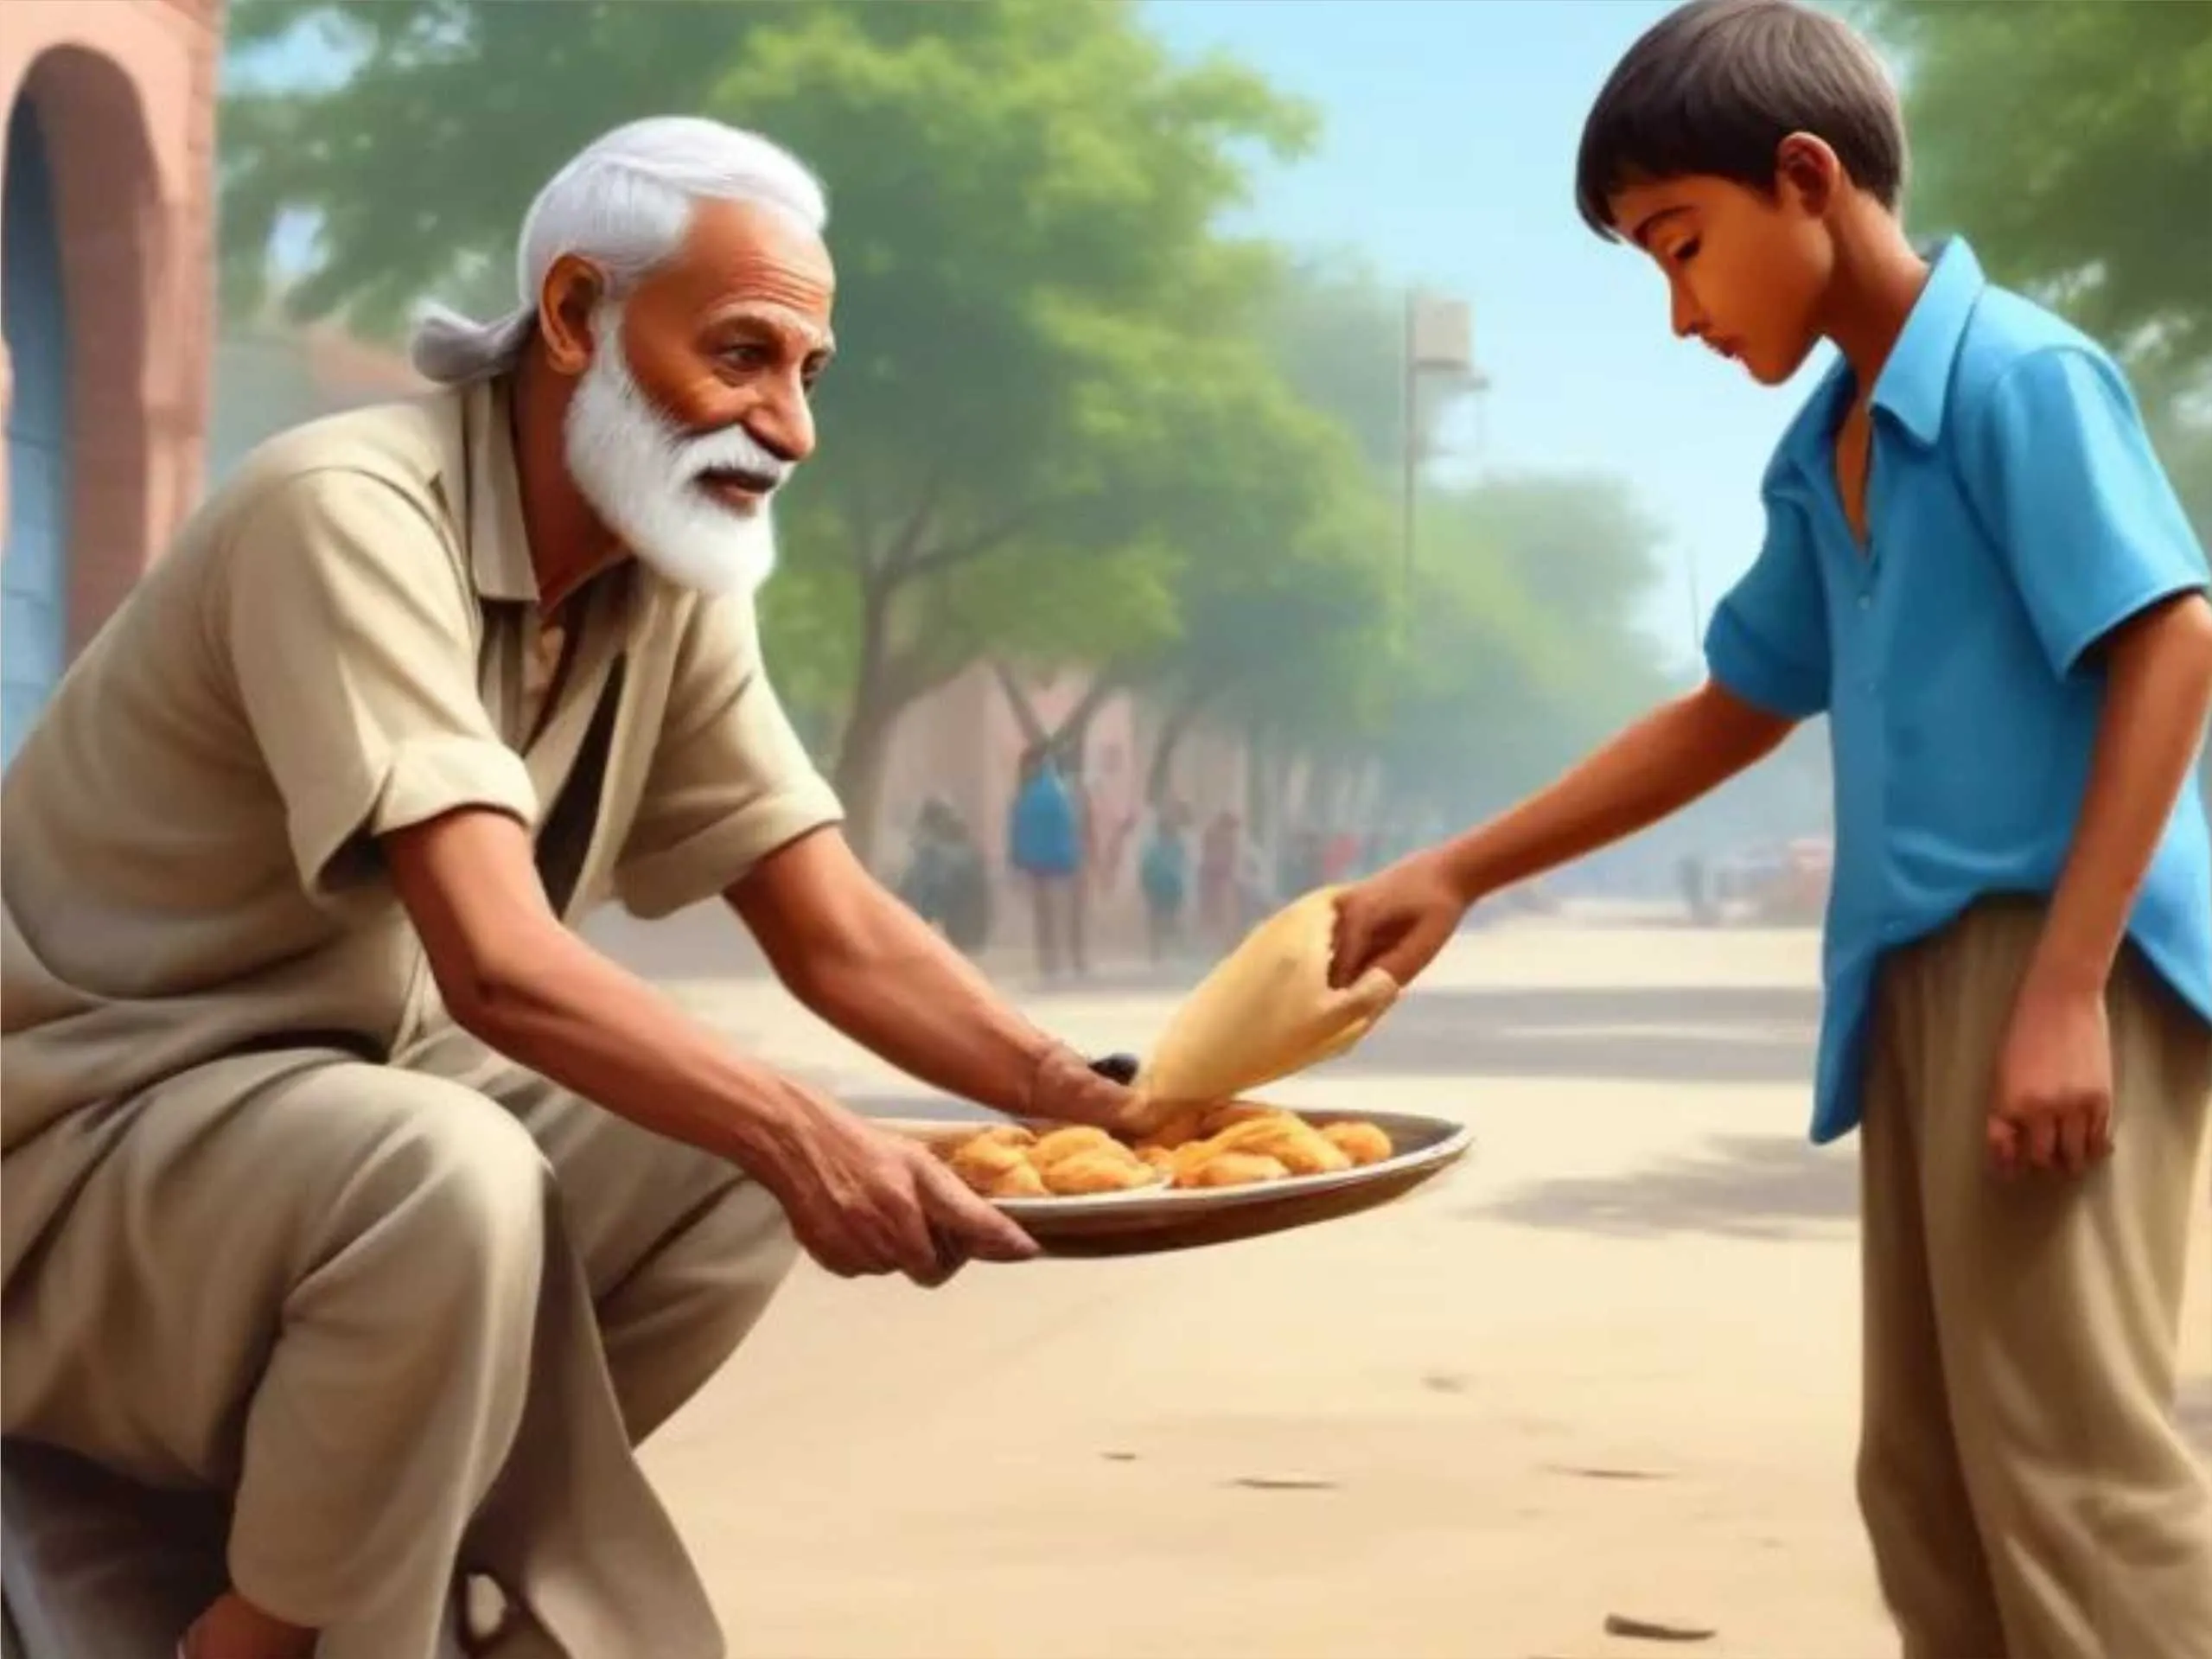 Boy giving food to a beggar cartoon image